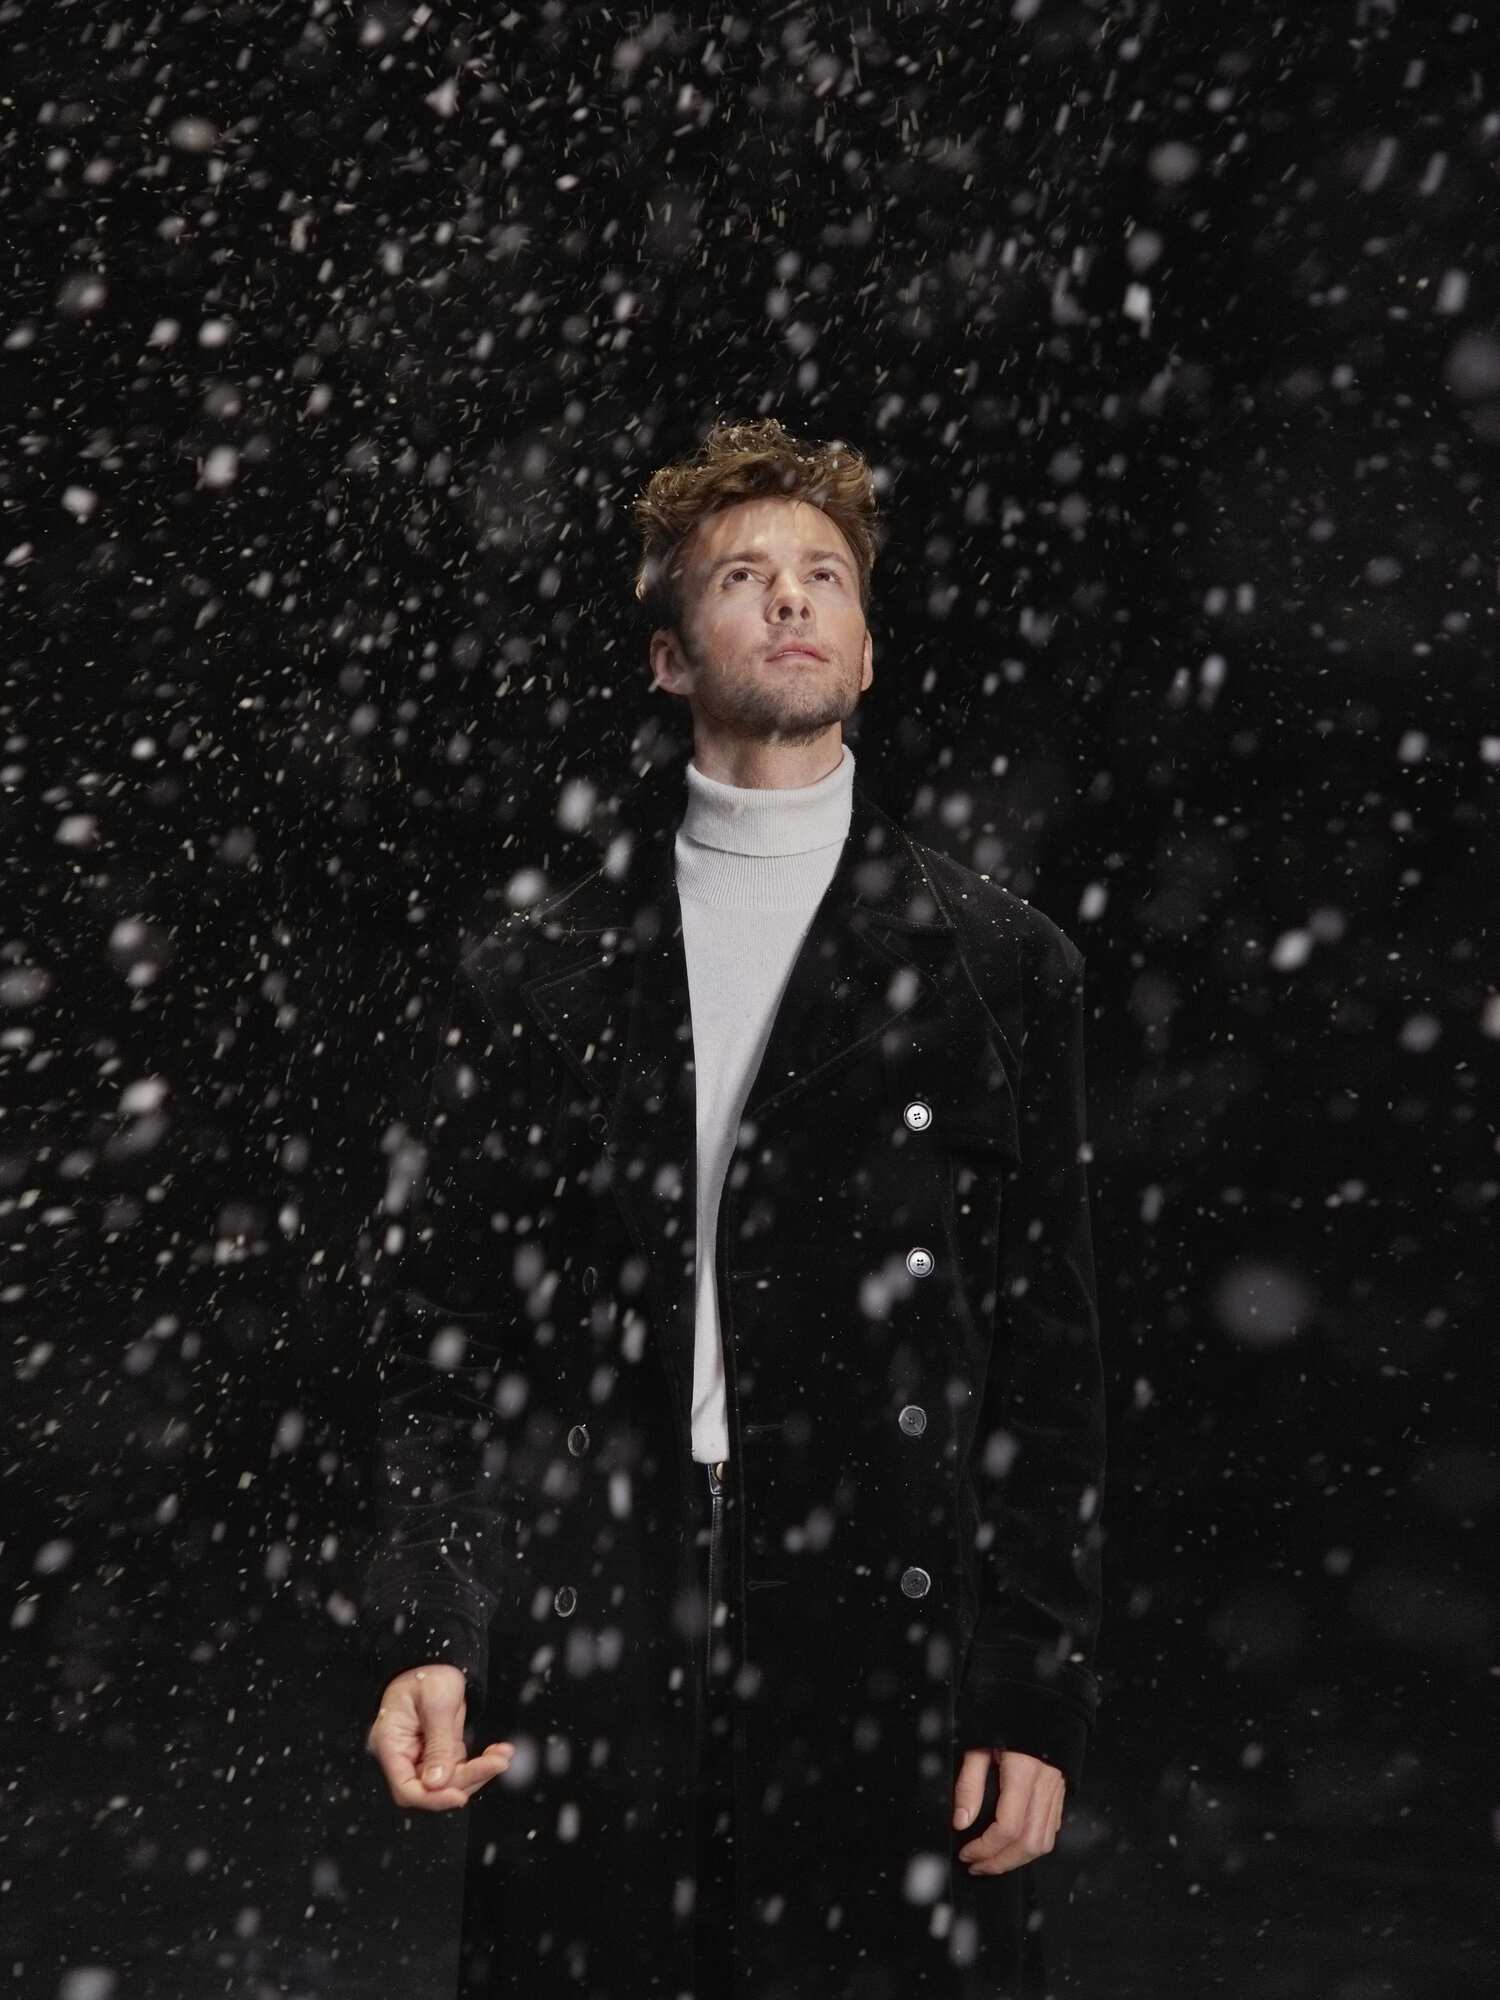 Макс Барских выпустил песню к Новому году и рассказал, как будет встречать зимние праздники: смеемся сквозь слезы